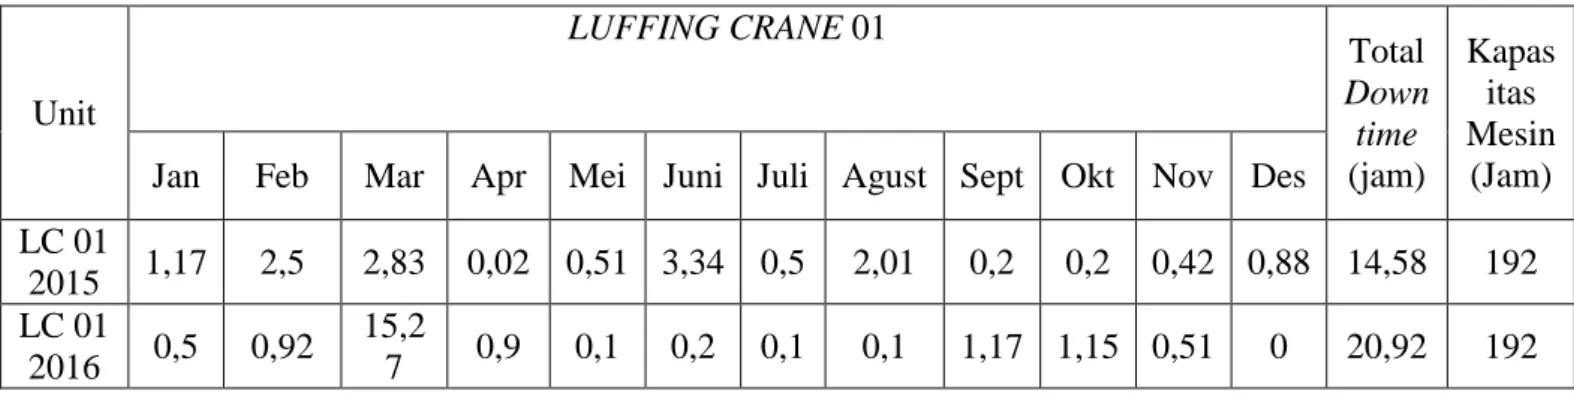 Tabel 1.1 Tabulasi data downtime luffing crane 01 periode 2015-2016 